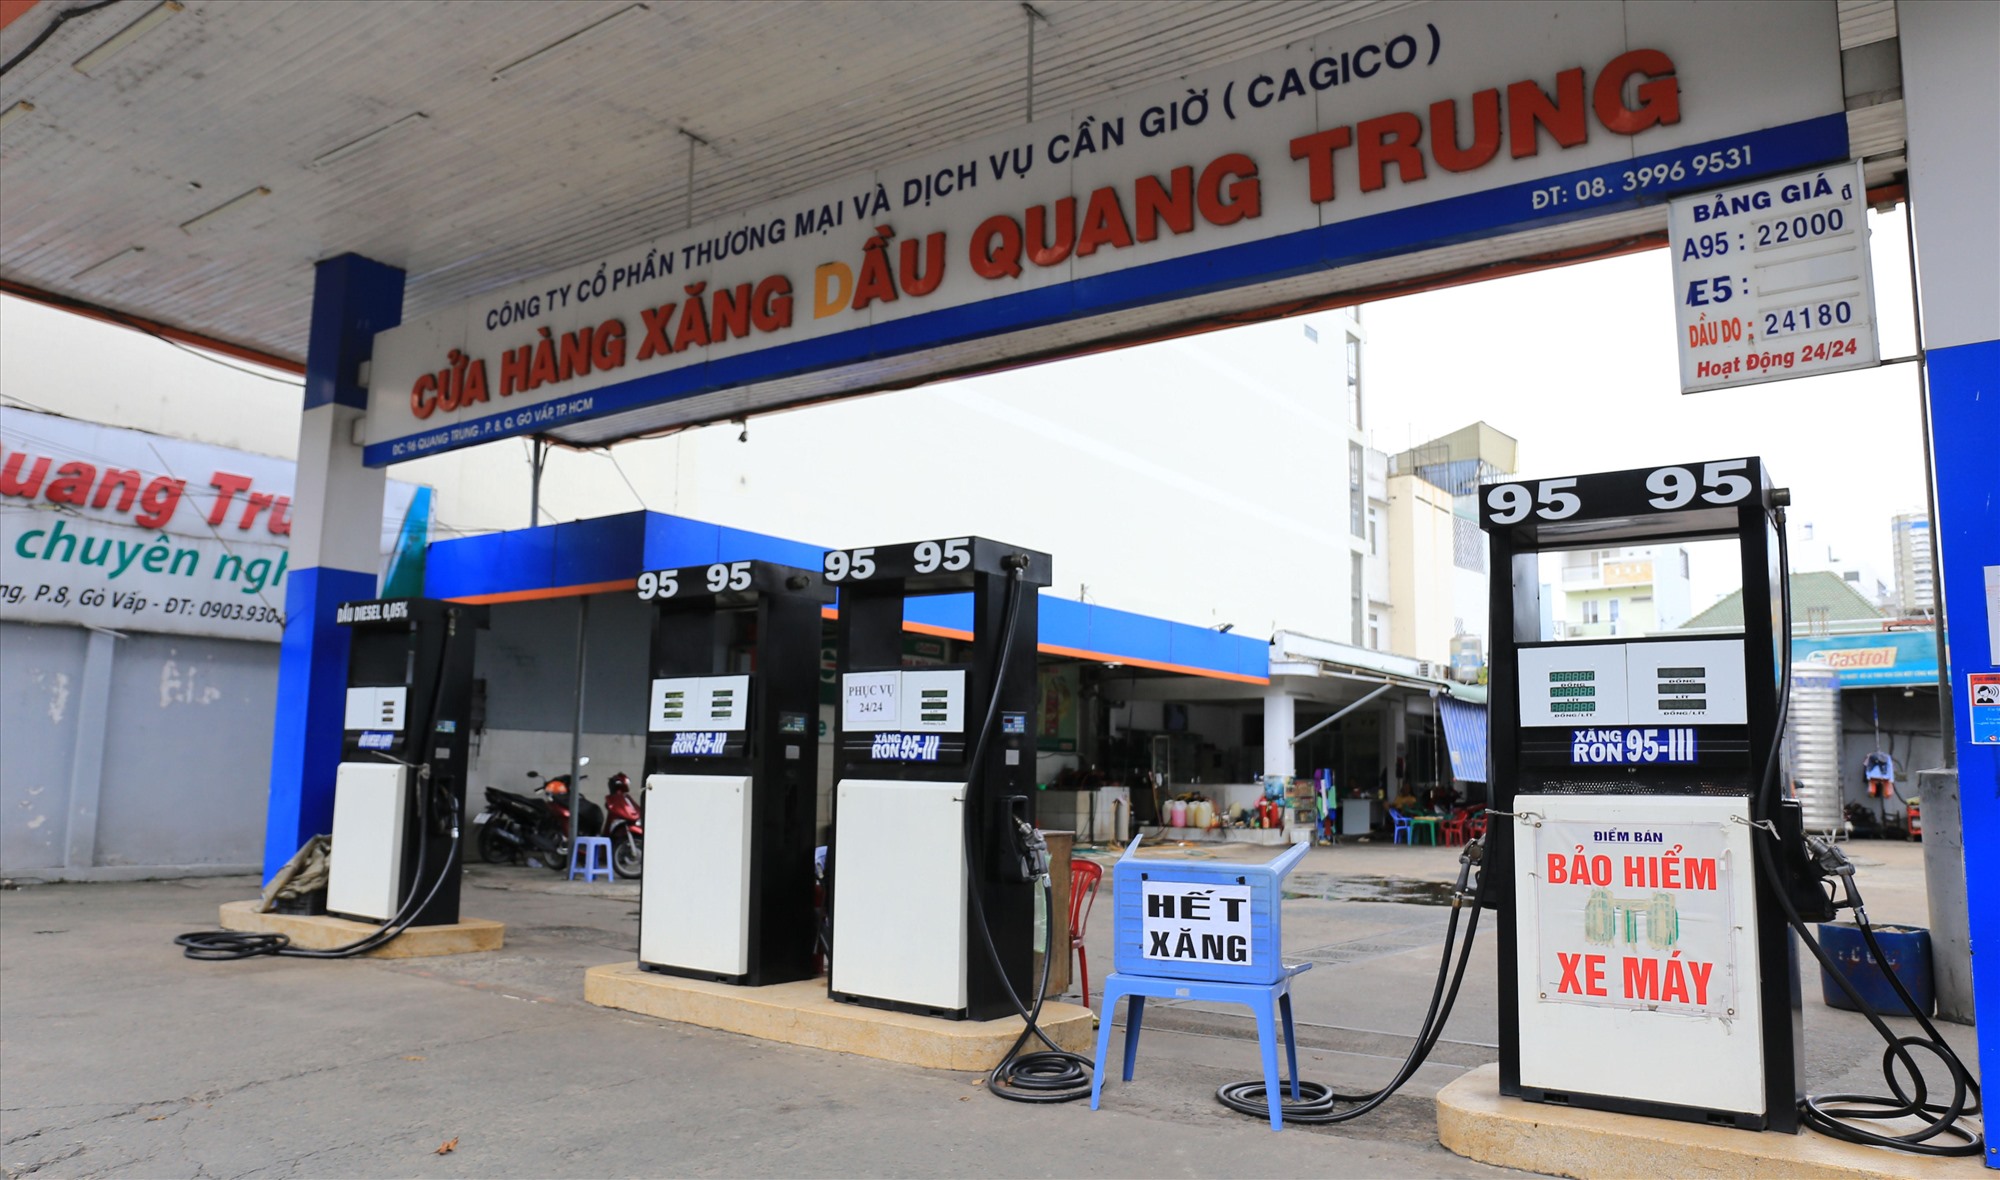 Chi nhánh 1 của cửa hàng xăng dầu nói ở đường Quang Trung, Q.Gò Vấp trên cũng dán thông báo hết xăng. Tại cửa hàng chỉ có hai nhân viên trông coi.